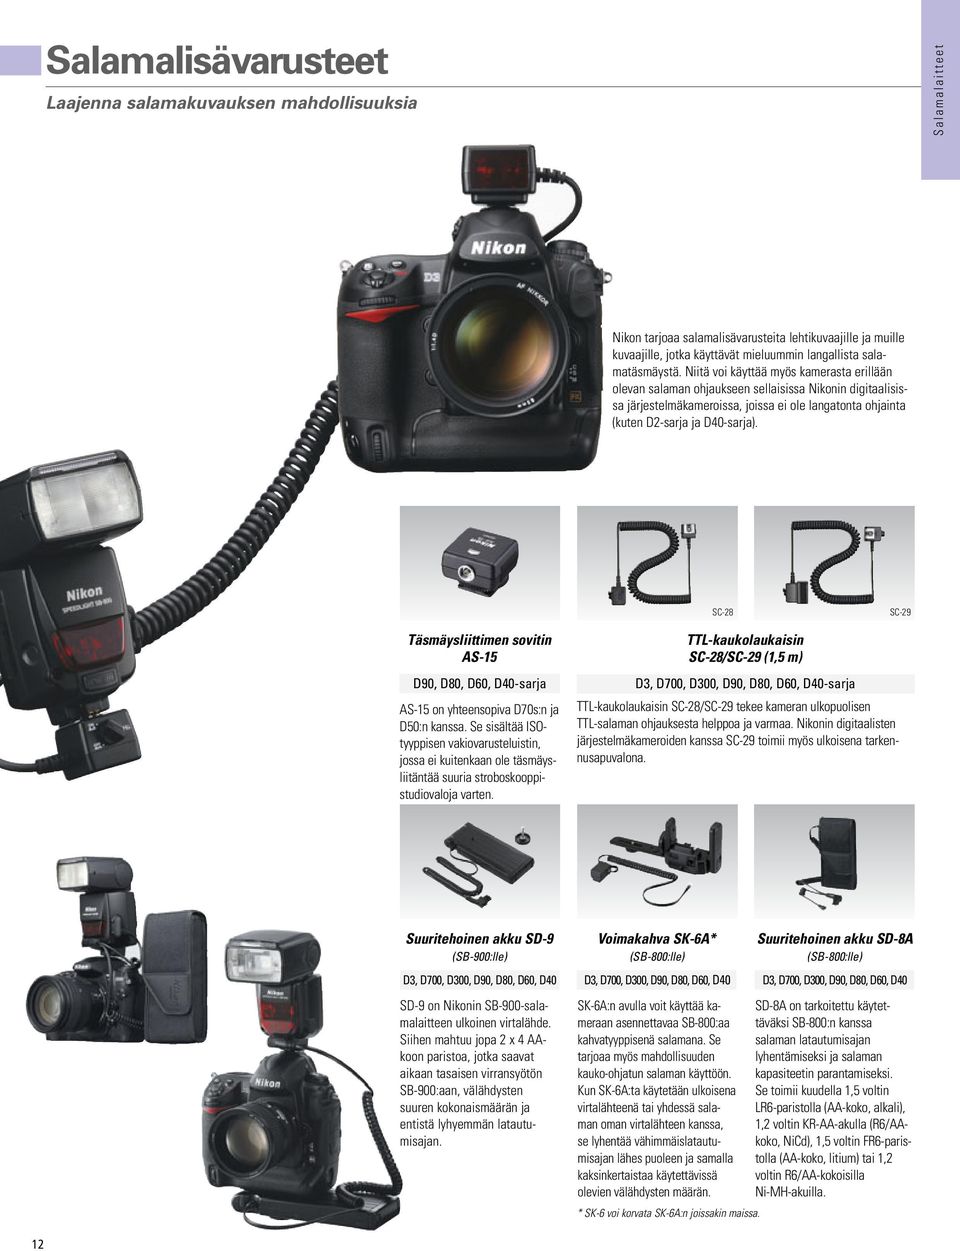 Niitä voi käyttää myös kamerasta erillään olevan salaman ohjaukseen sellaisissa Nikonin digitaalisissa järjestelmäkameroissa, joissa ei ole langatonta ohjainta (kuten D2-sarja ja D40-sarja).